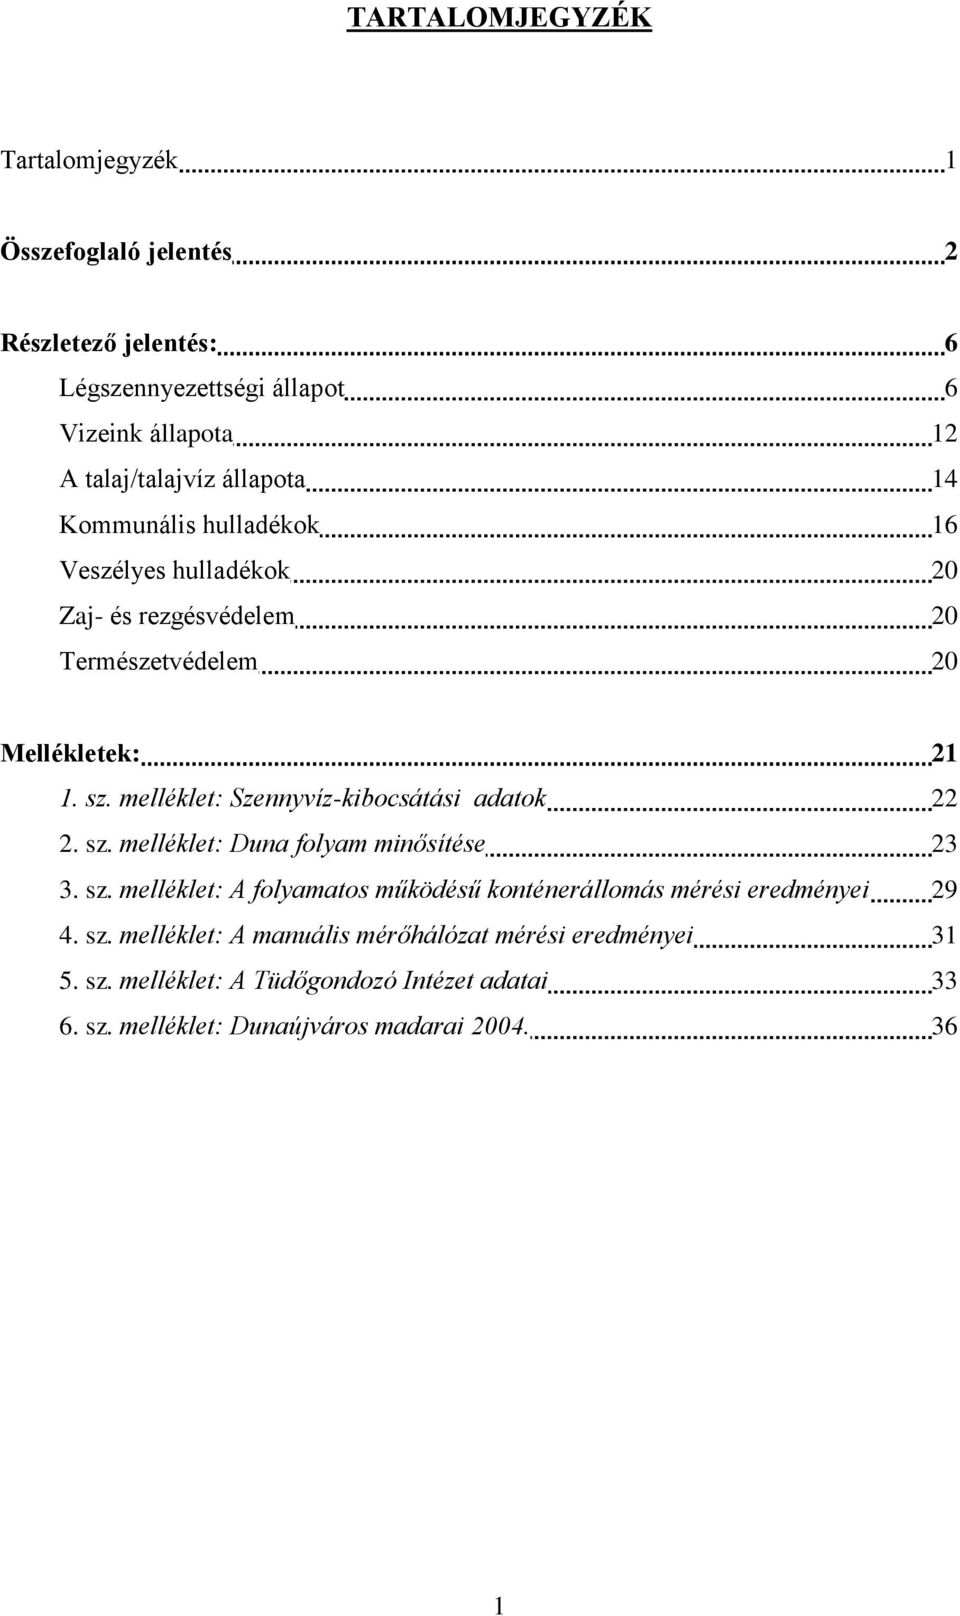 melléklet: Szennyvíz-kibocsátási adatok 22 2. sz. melléklet: Duna folyam minősítése 23 3. sz. melléklet: A folyamatos működésű konténerállomás mérési eredményei 29 4.